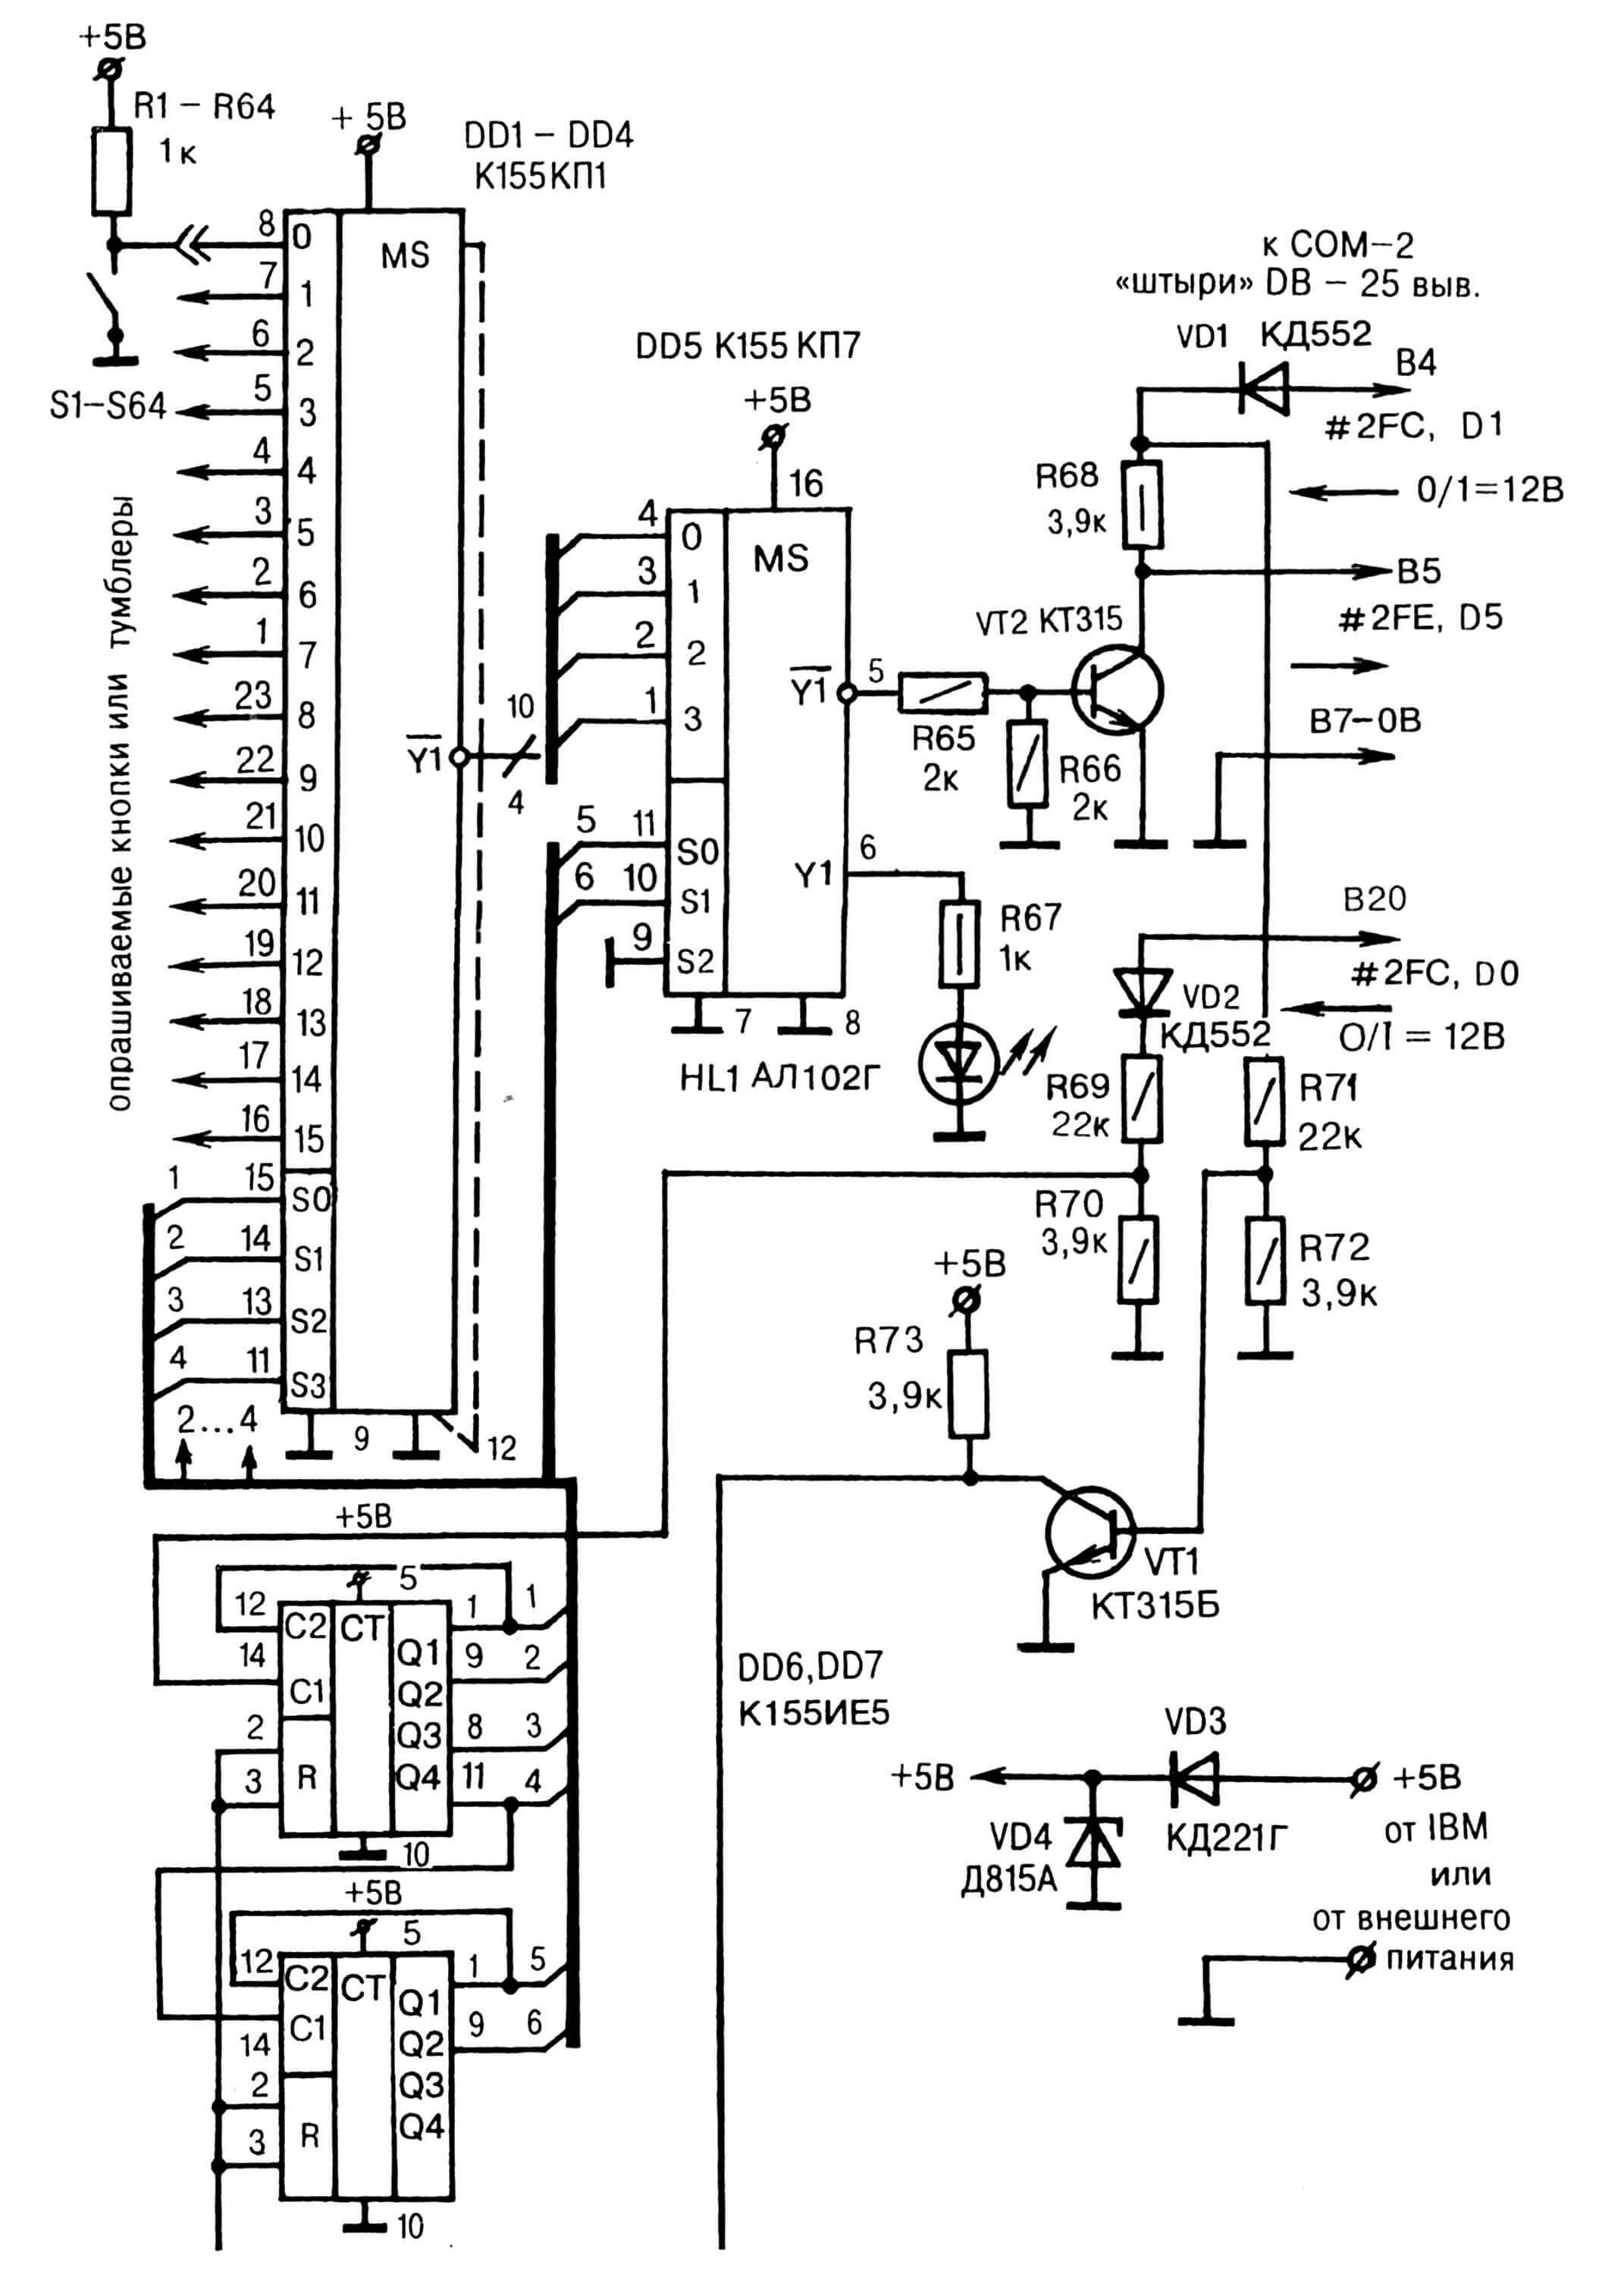 Принципиальная электрическая схема сопряжения 64-х «опросных» тумблеров (кнопок) с портом СОМ-2 PC IBM.